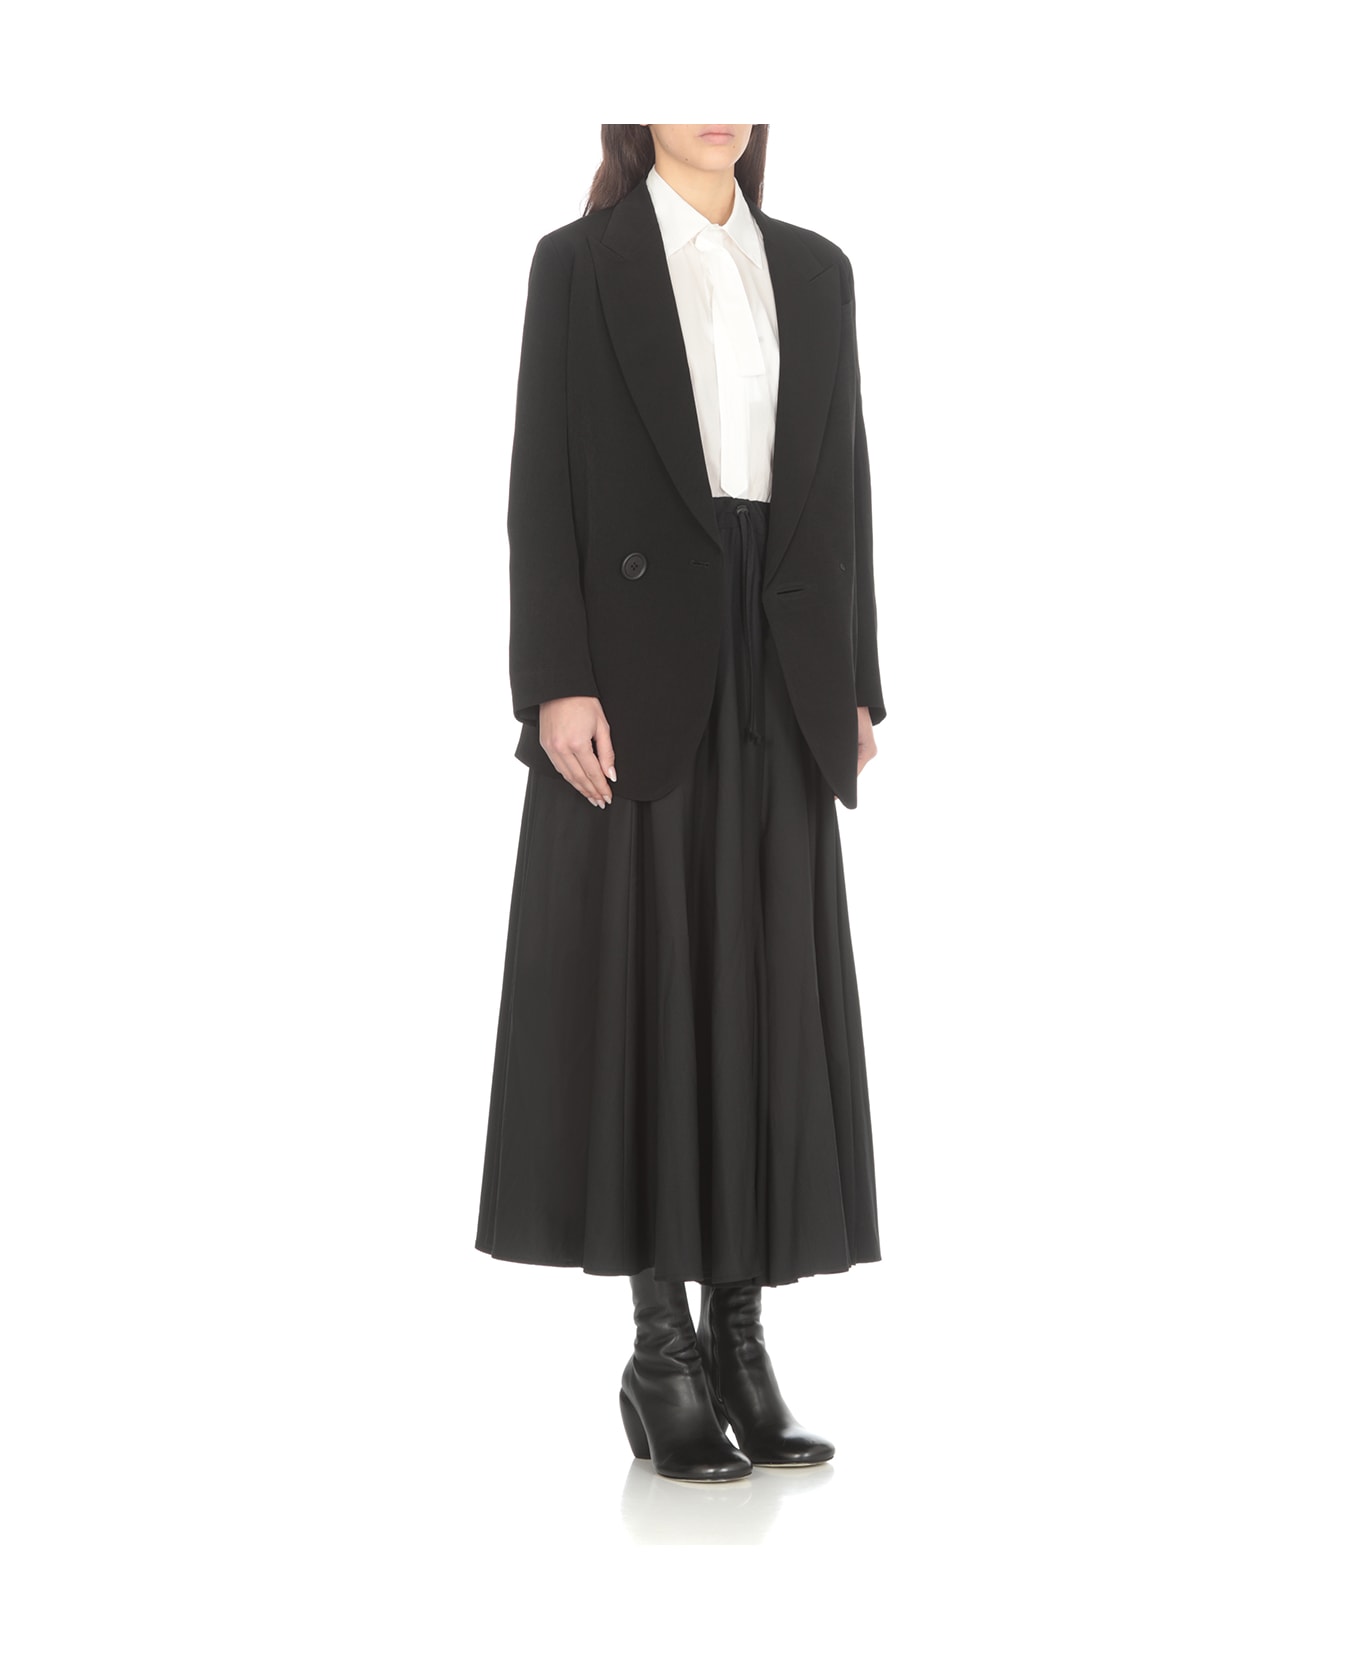 Yohji Yamamoto Wool Skirt - Black スカート